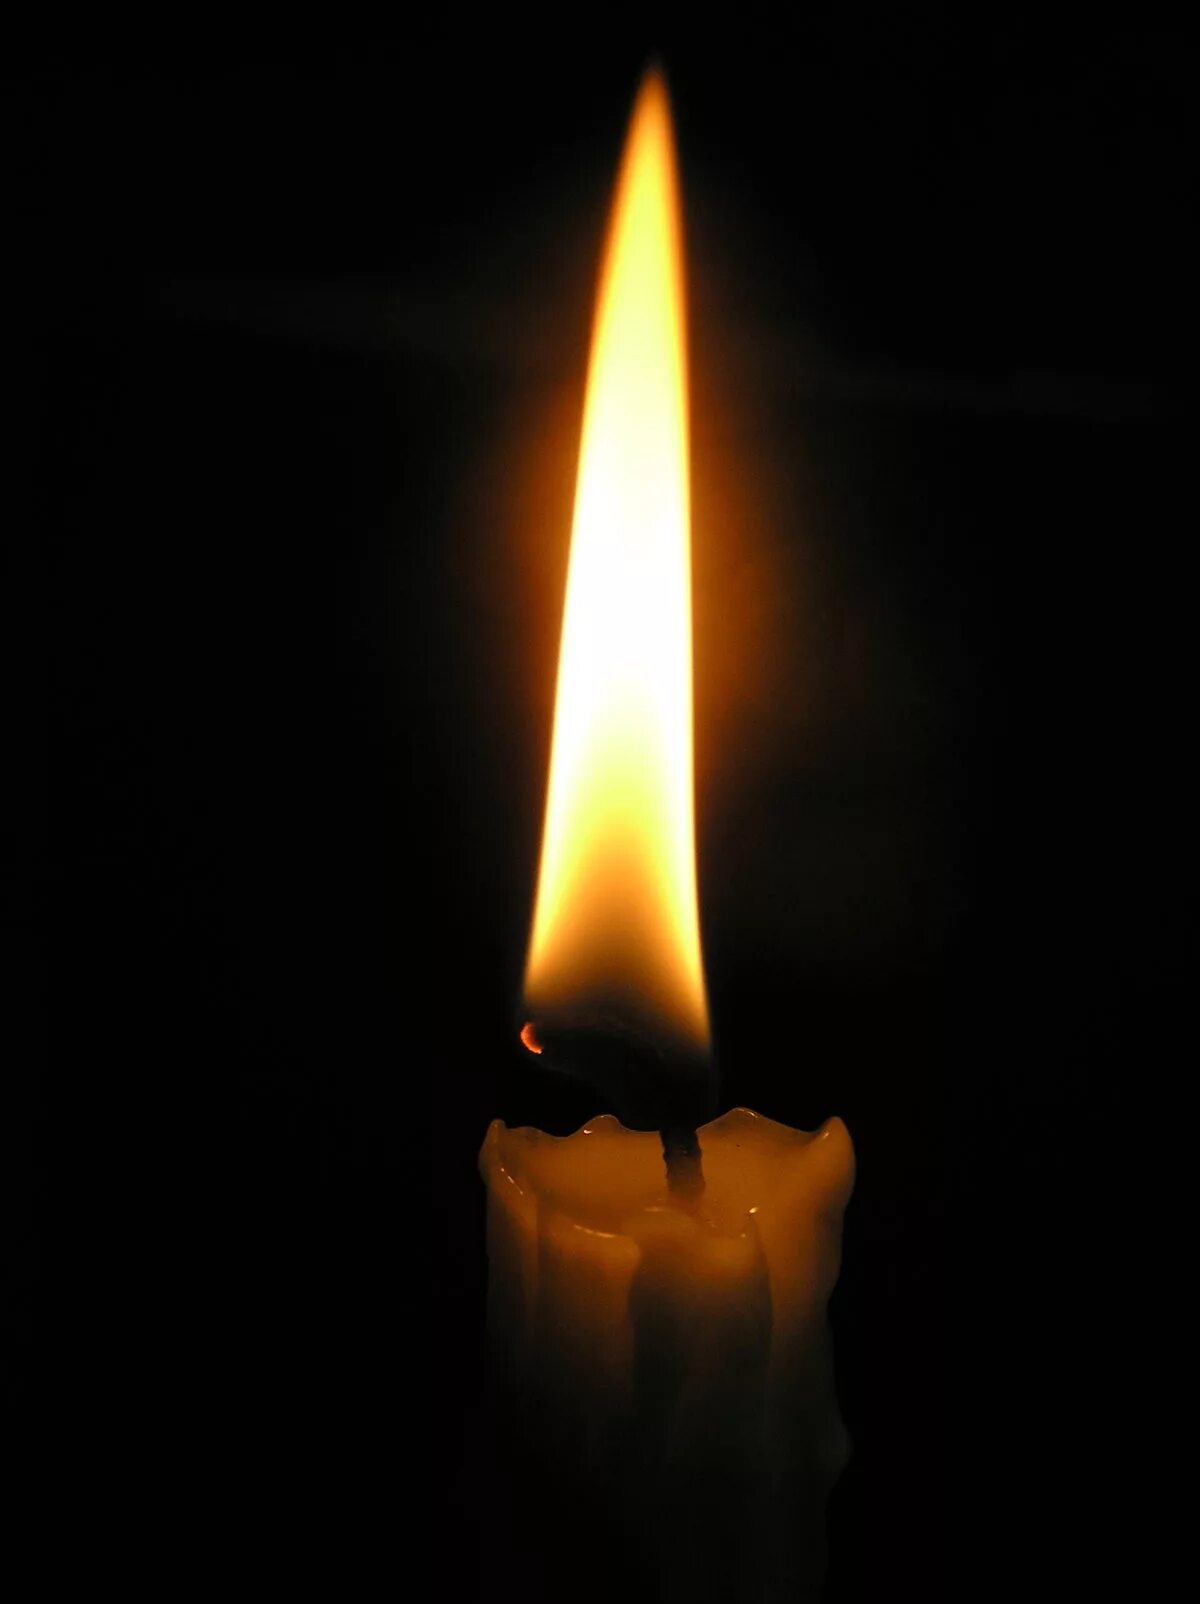 Поминальная свеча. Помпоминальная свечка. Горящая свеча в темноте. Свеча горит в темноте.